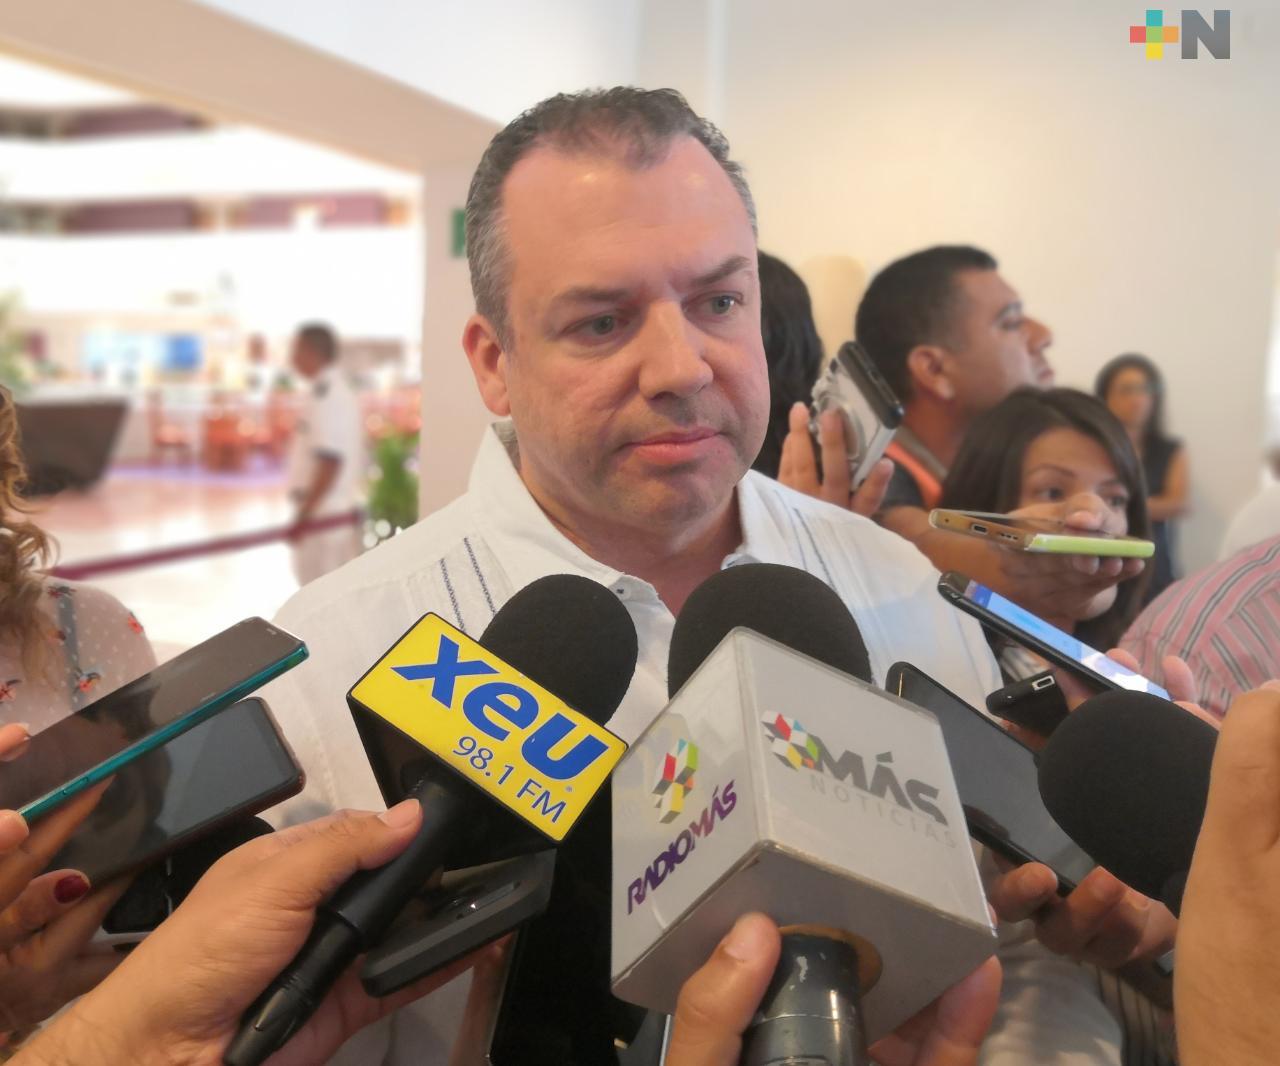 Mantener medidas sanitaria ante coronavirus, reitera alcalde de Boca del Río